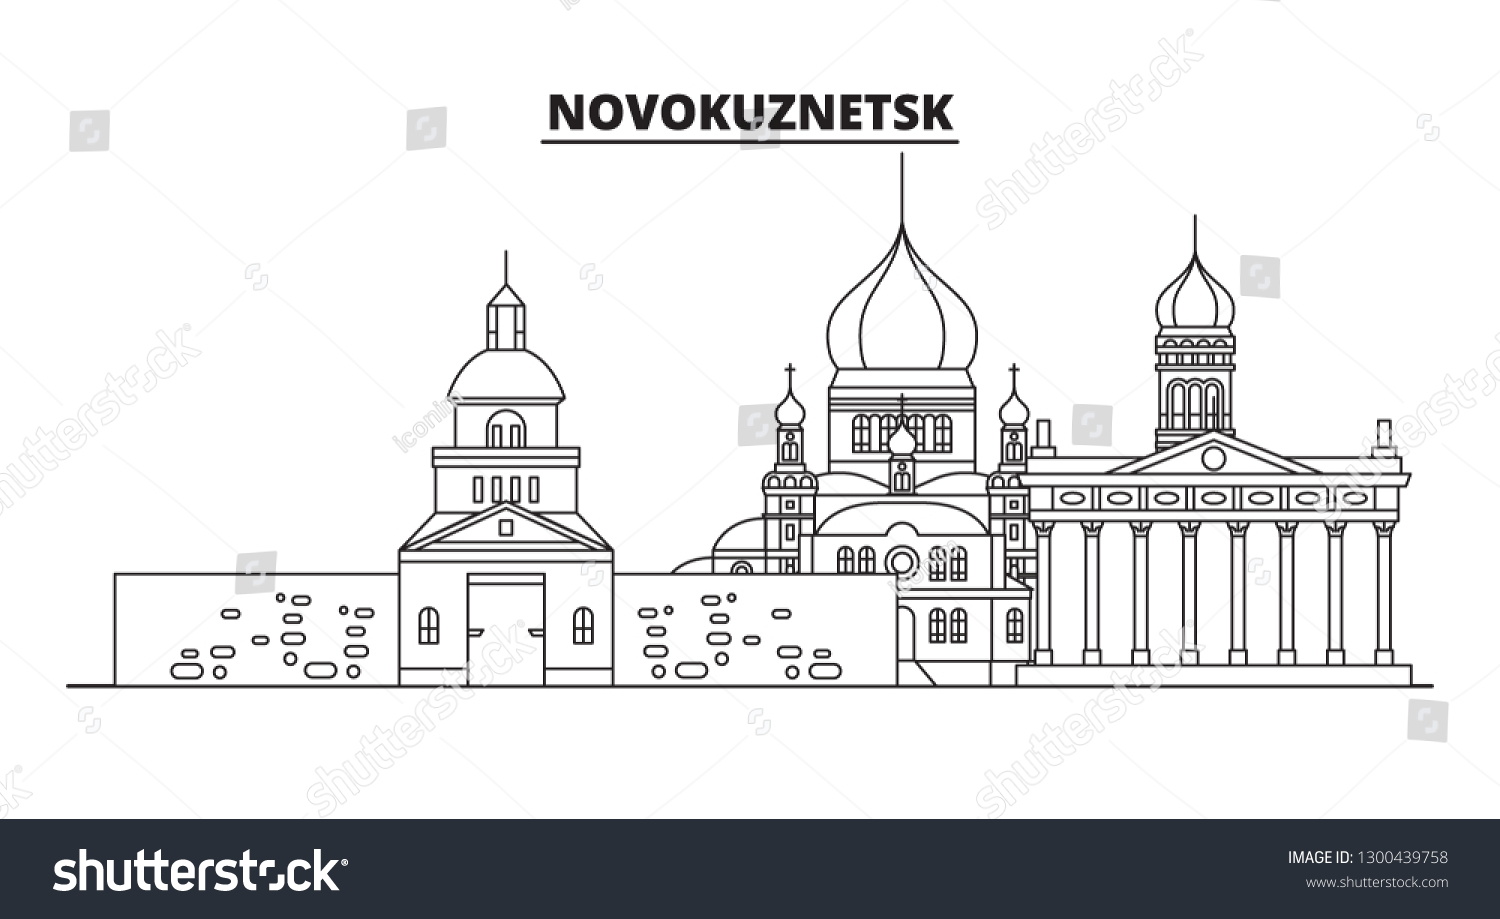 Кузнецкая крепость Новокузнецк вектор